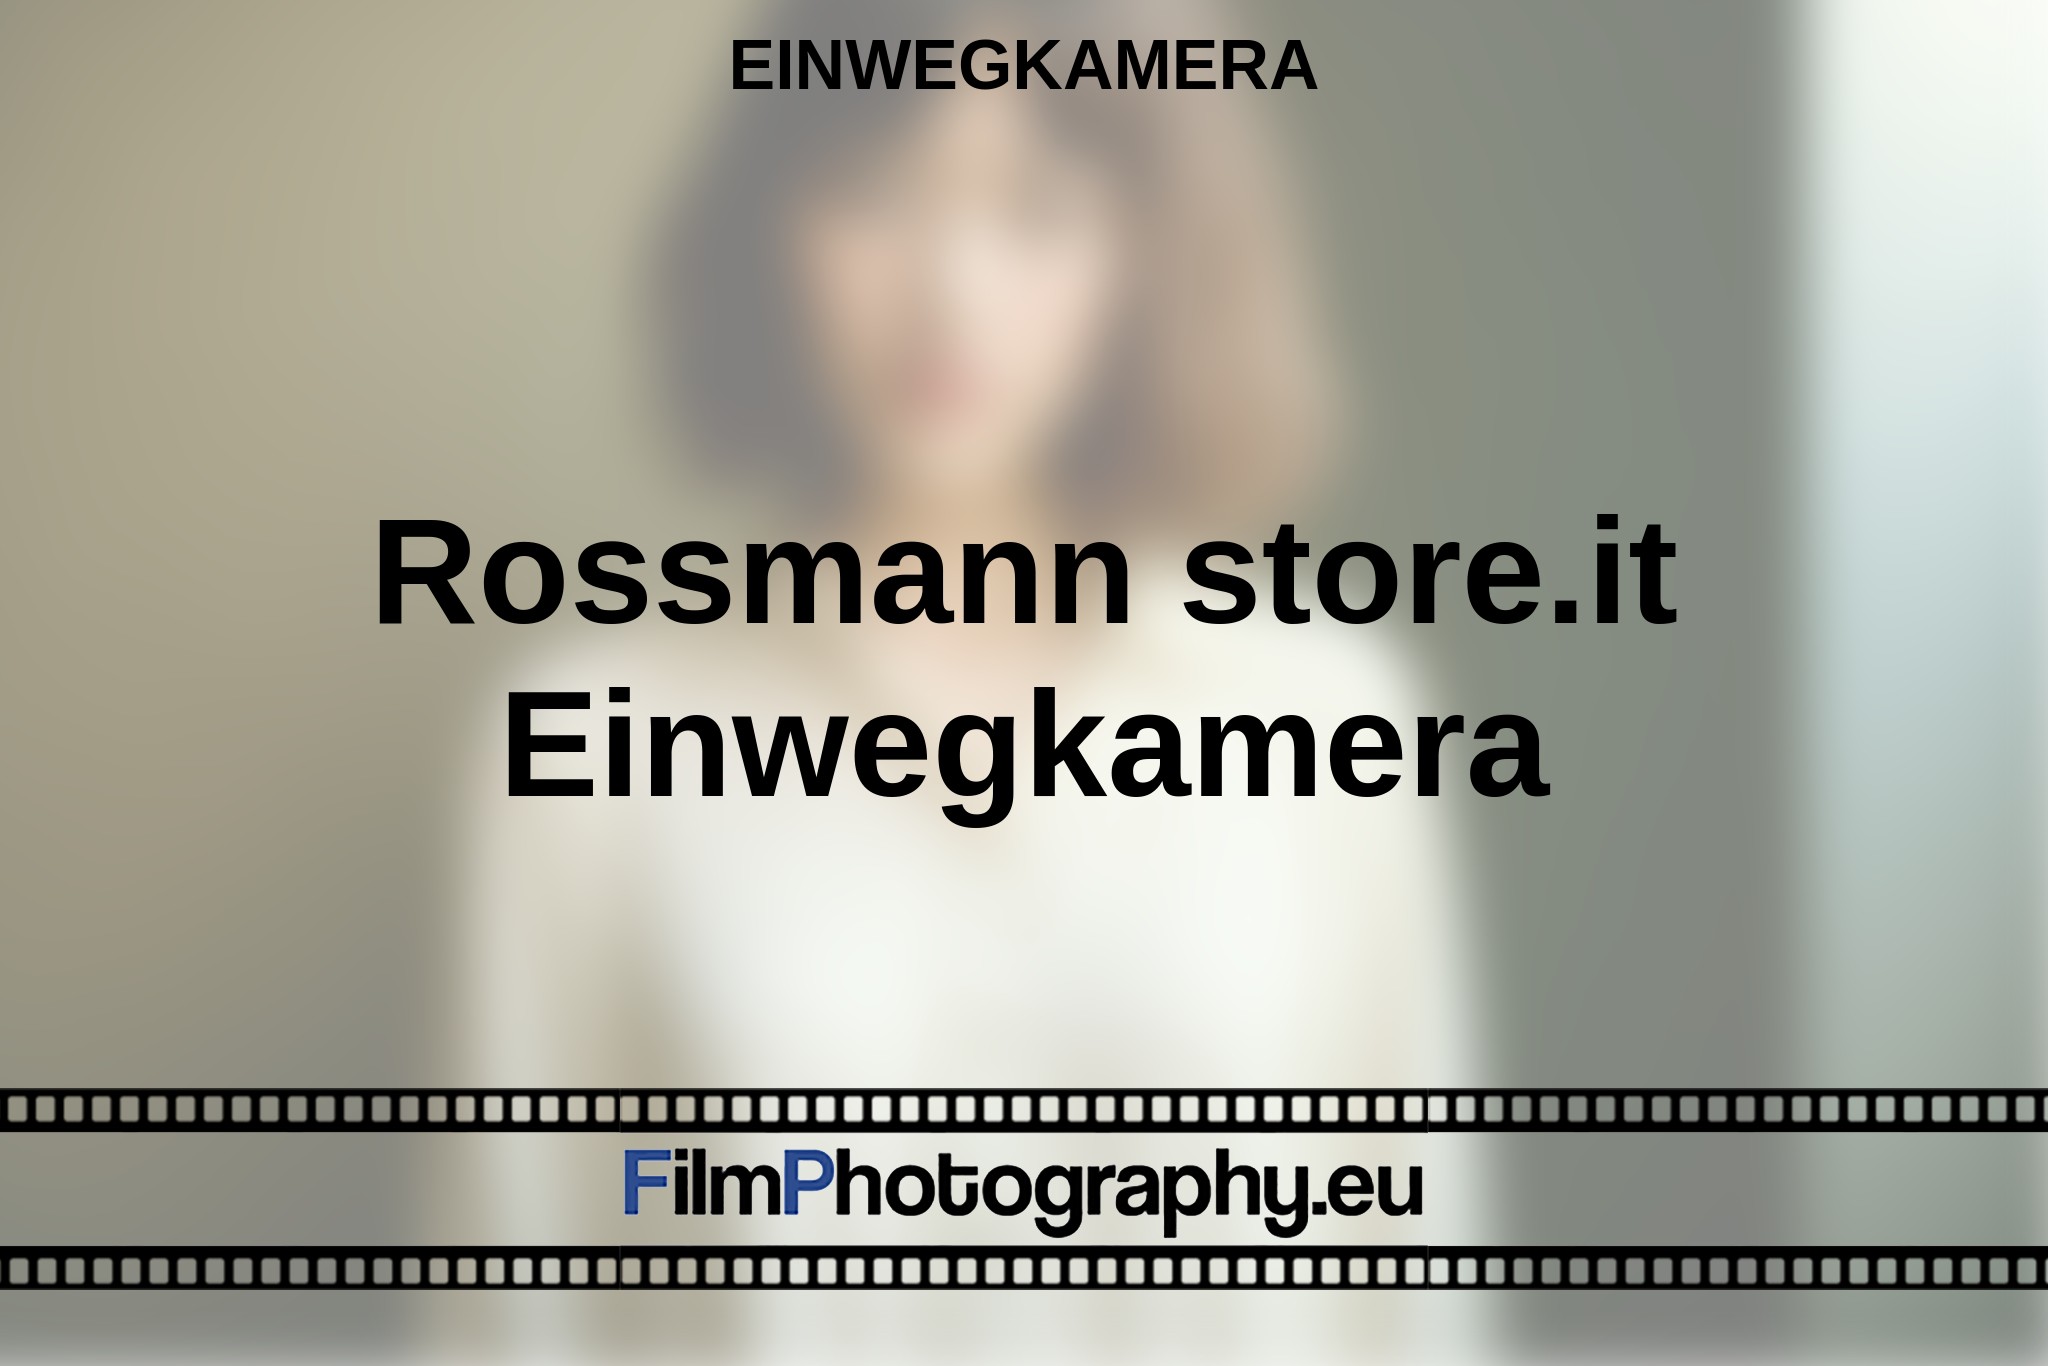 rossmann-store-it-einwegkamera-einwegkamera-bnv.jpg